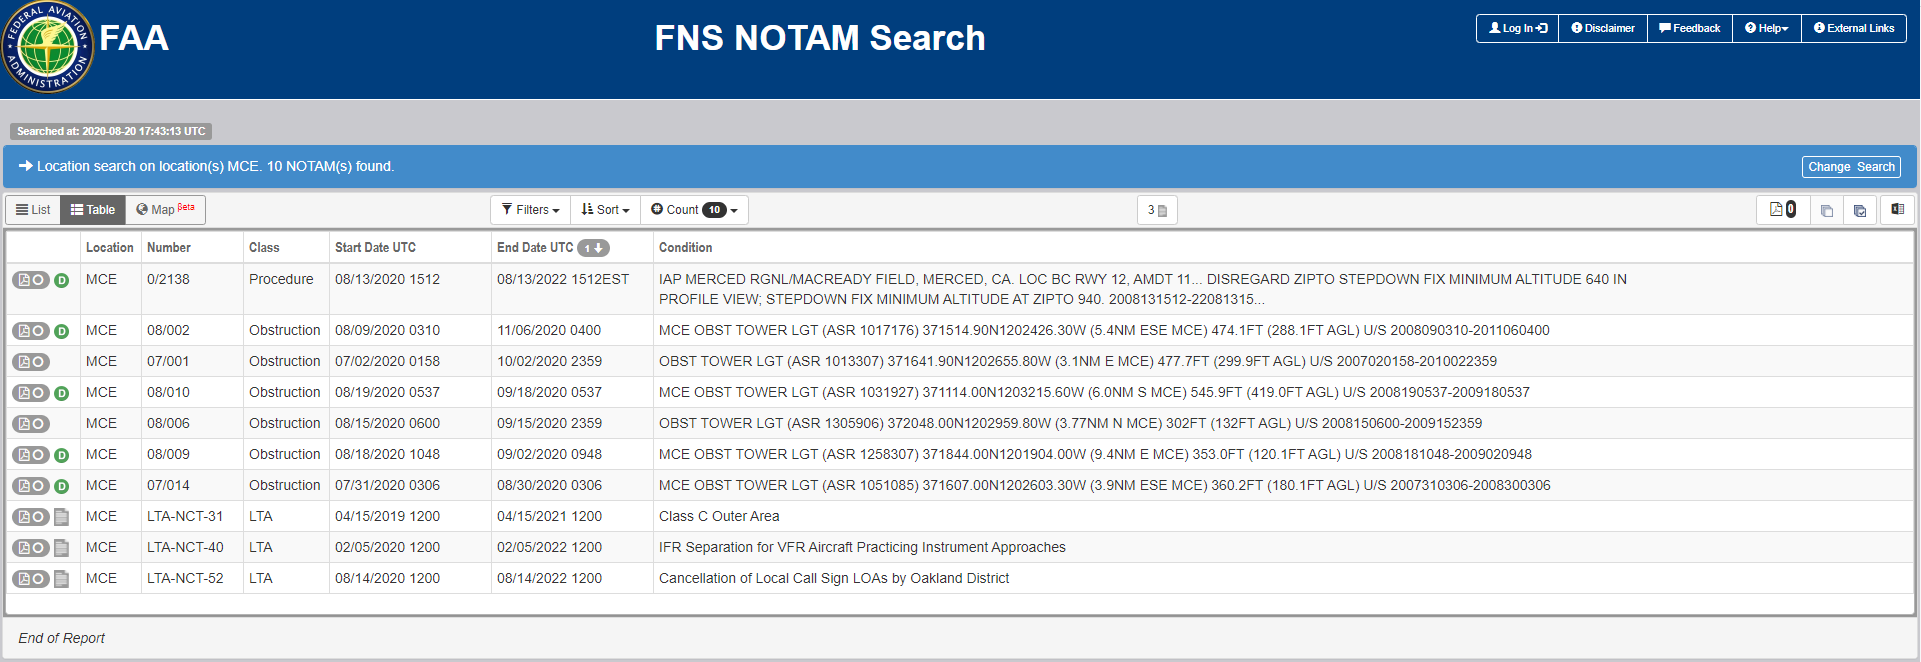 FAA NOTAM (Notice to Airman)